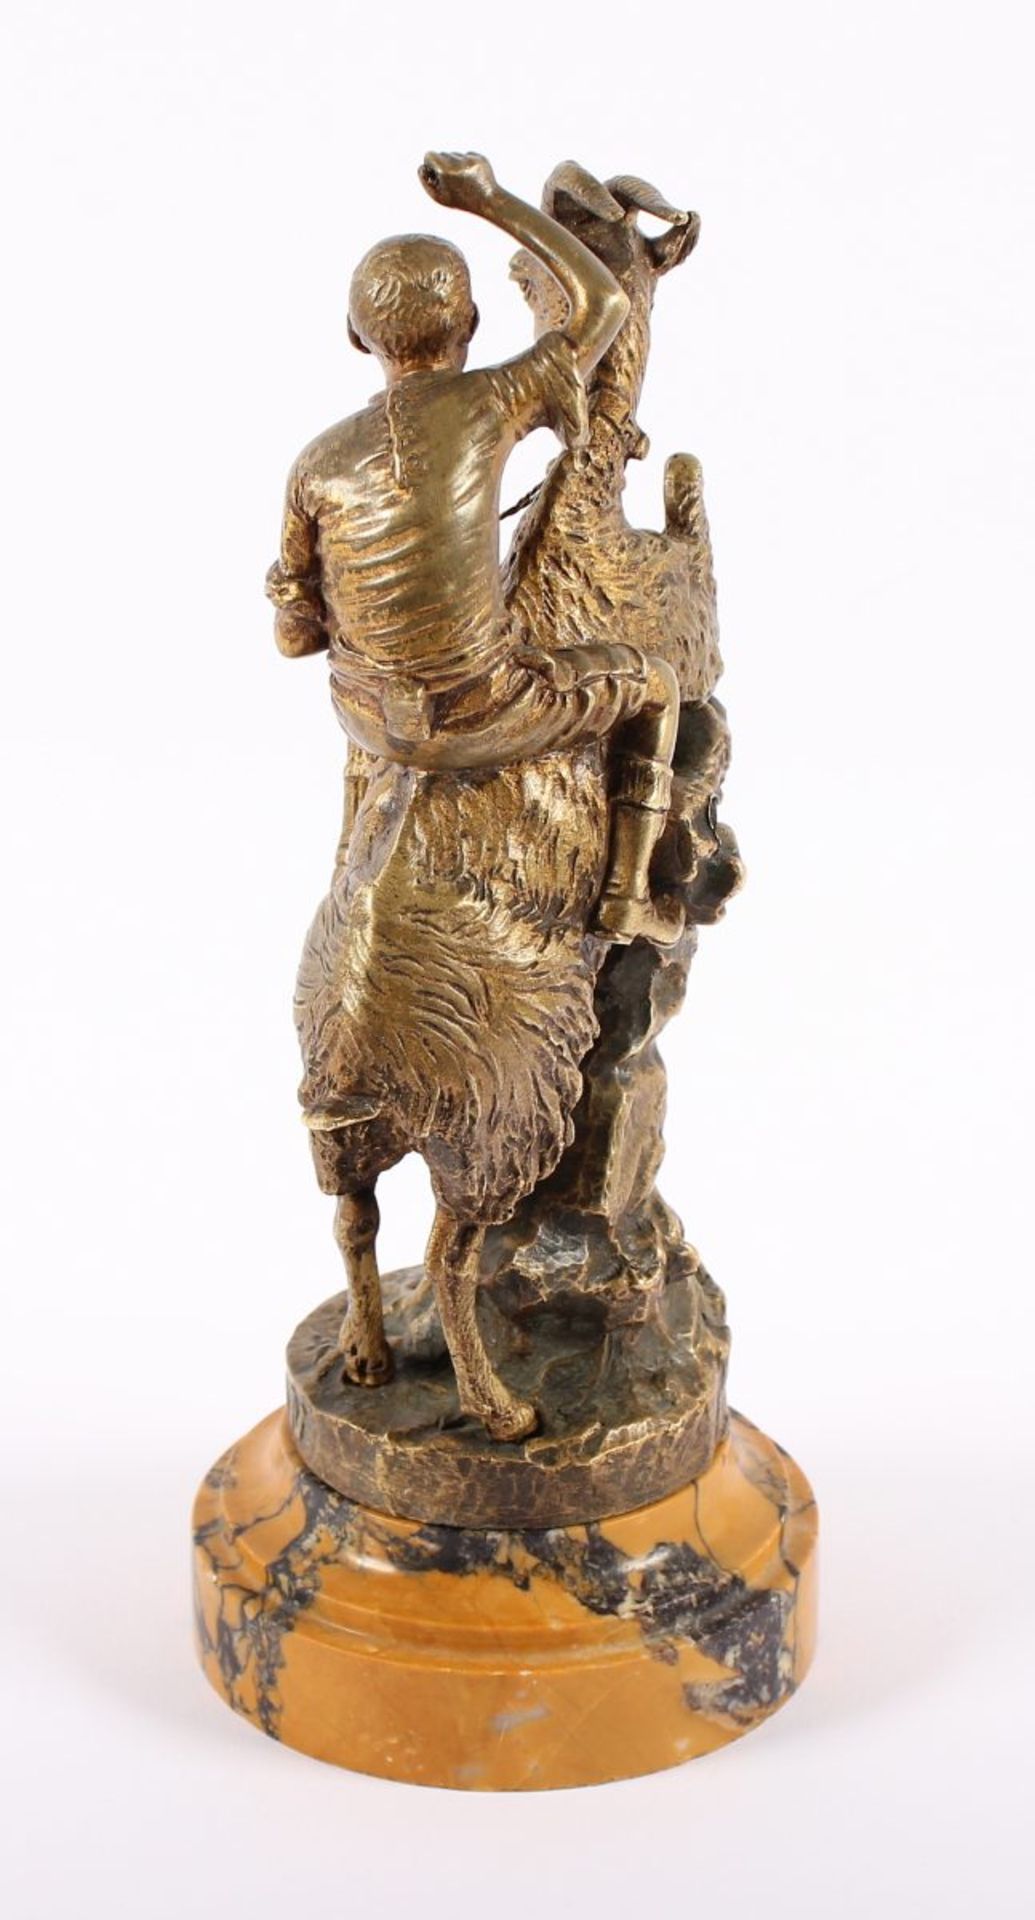 JUNGE AUF ZIEGENBOCK, Bronze, auf Marmorsockel montiert, H 23,5, bez. "Vocation", unleserlich - Bild 4 aus 5